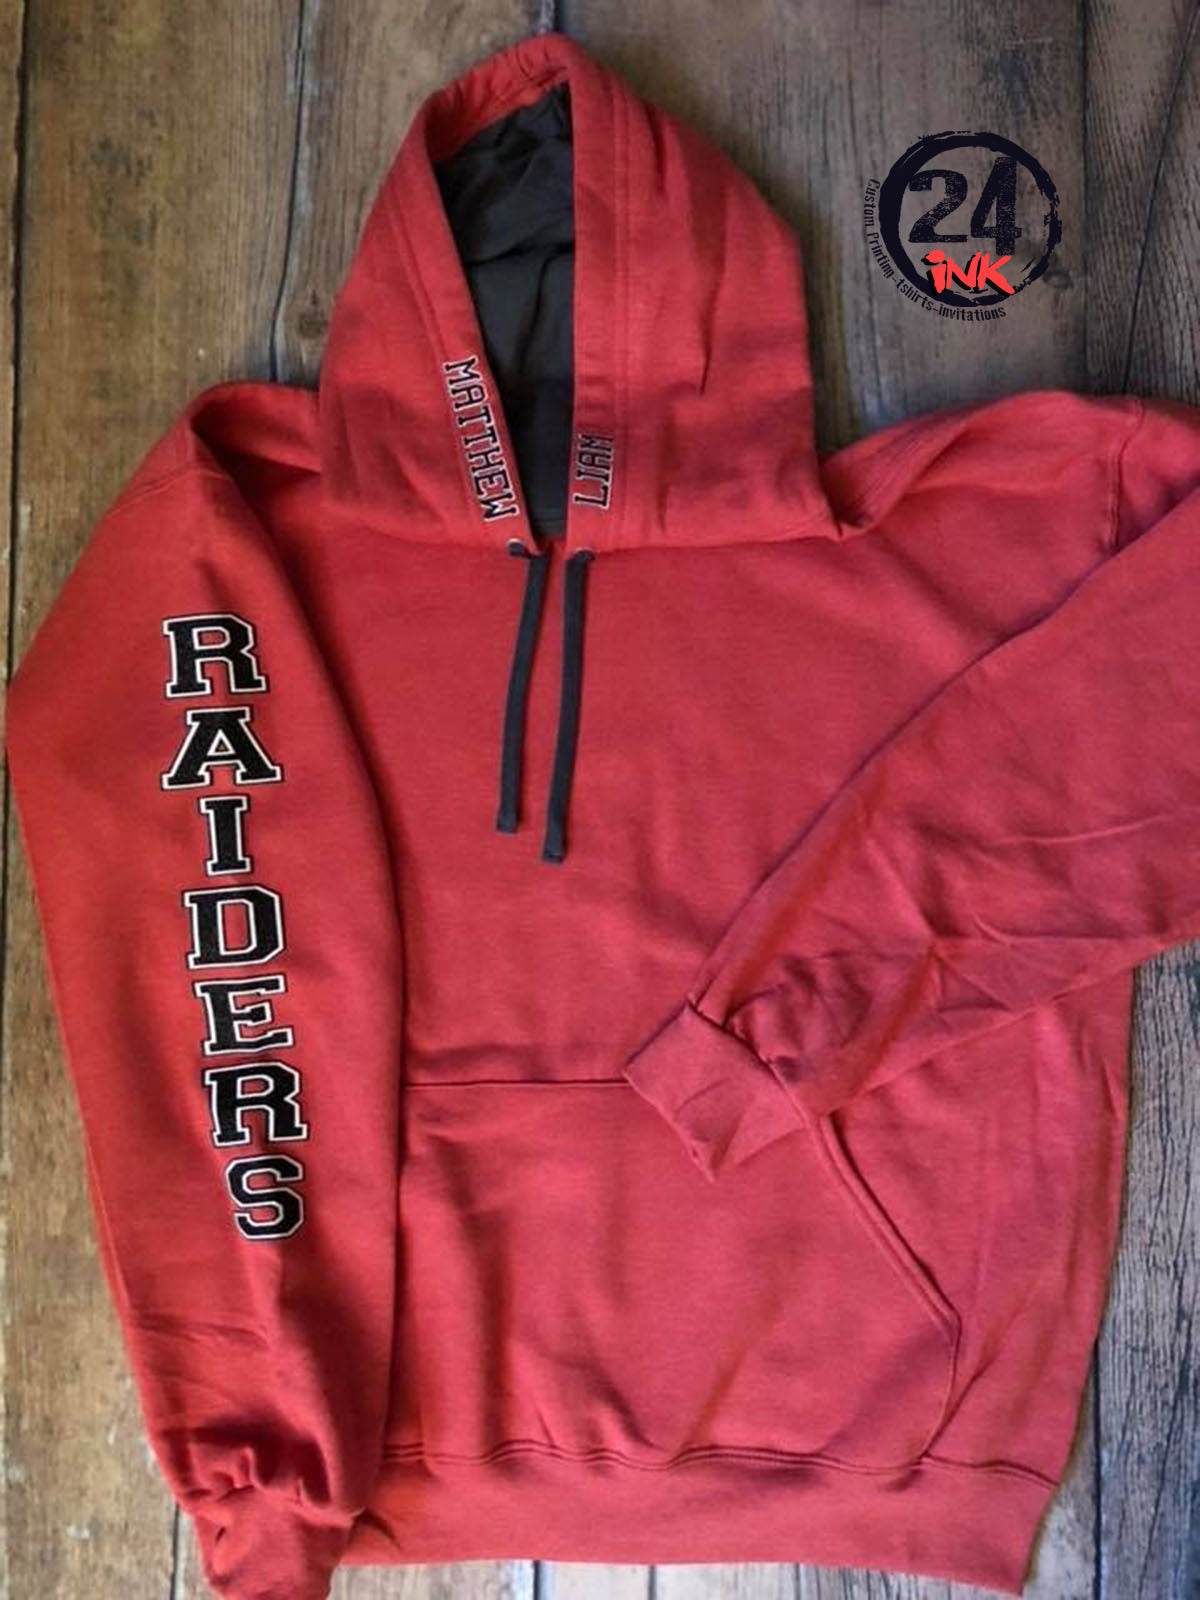 Raiders Spirit Sweatshirt, Personalized